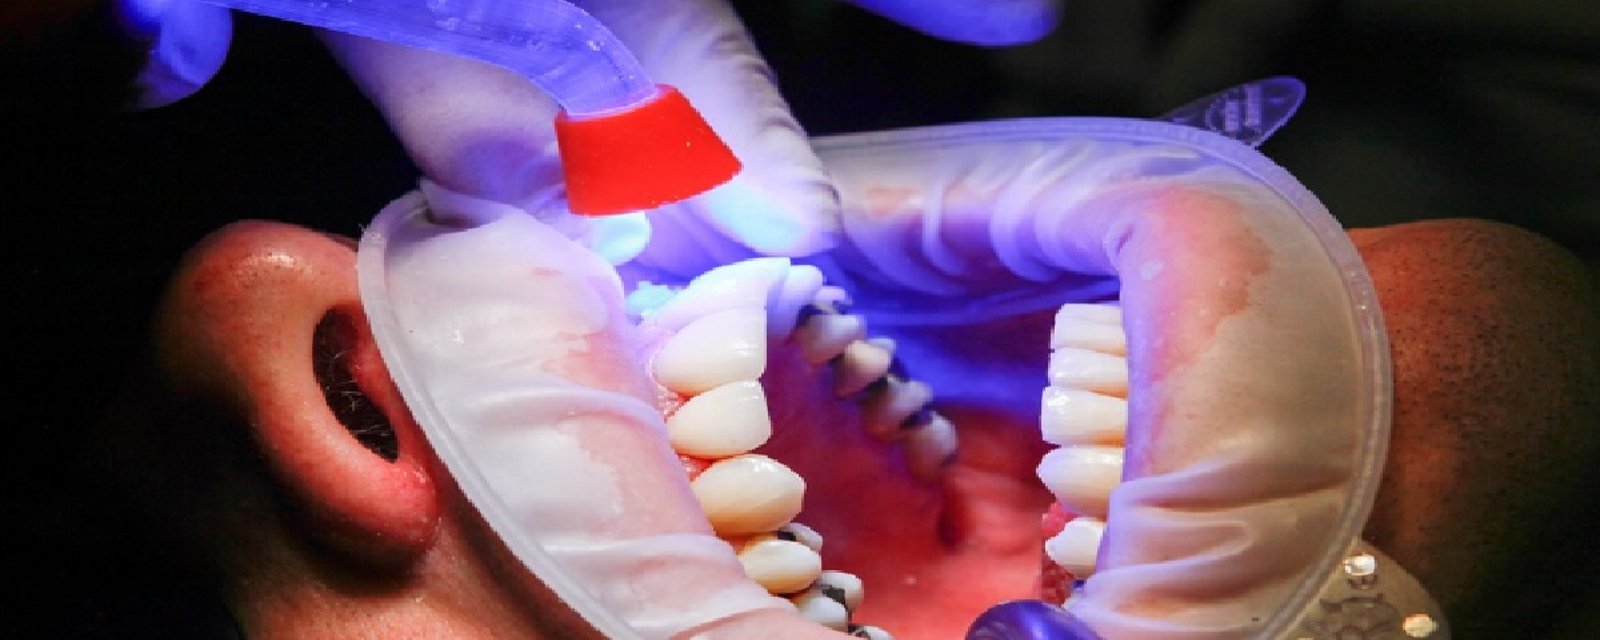 Les dentistes ne veulent pas vous révéler ce secret : Incorporez ces 3 ingrédients à votre dentifrice pour des belles dents blanches